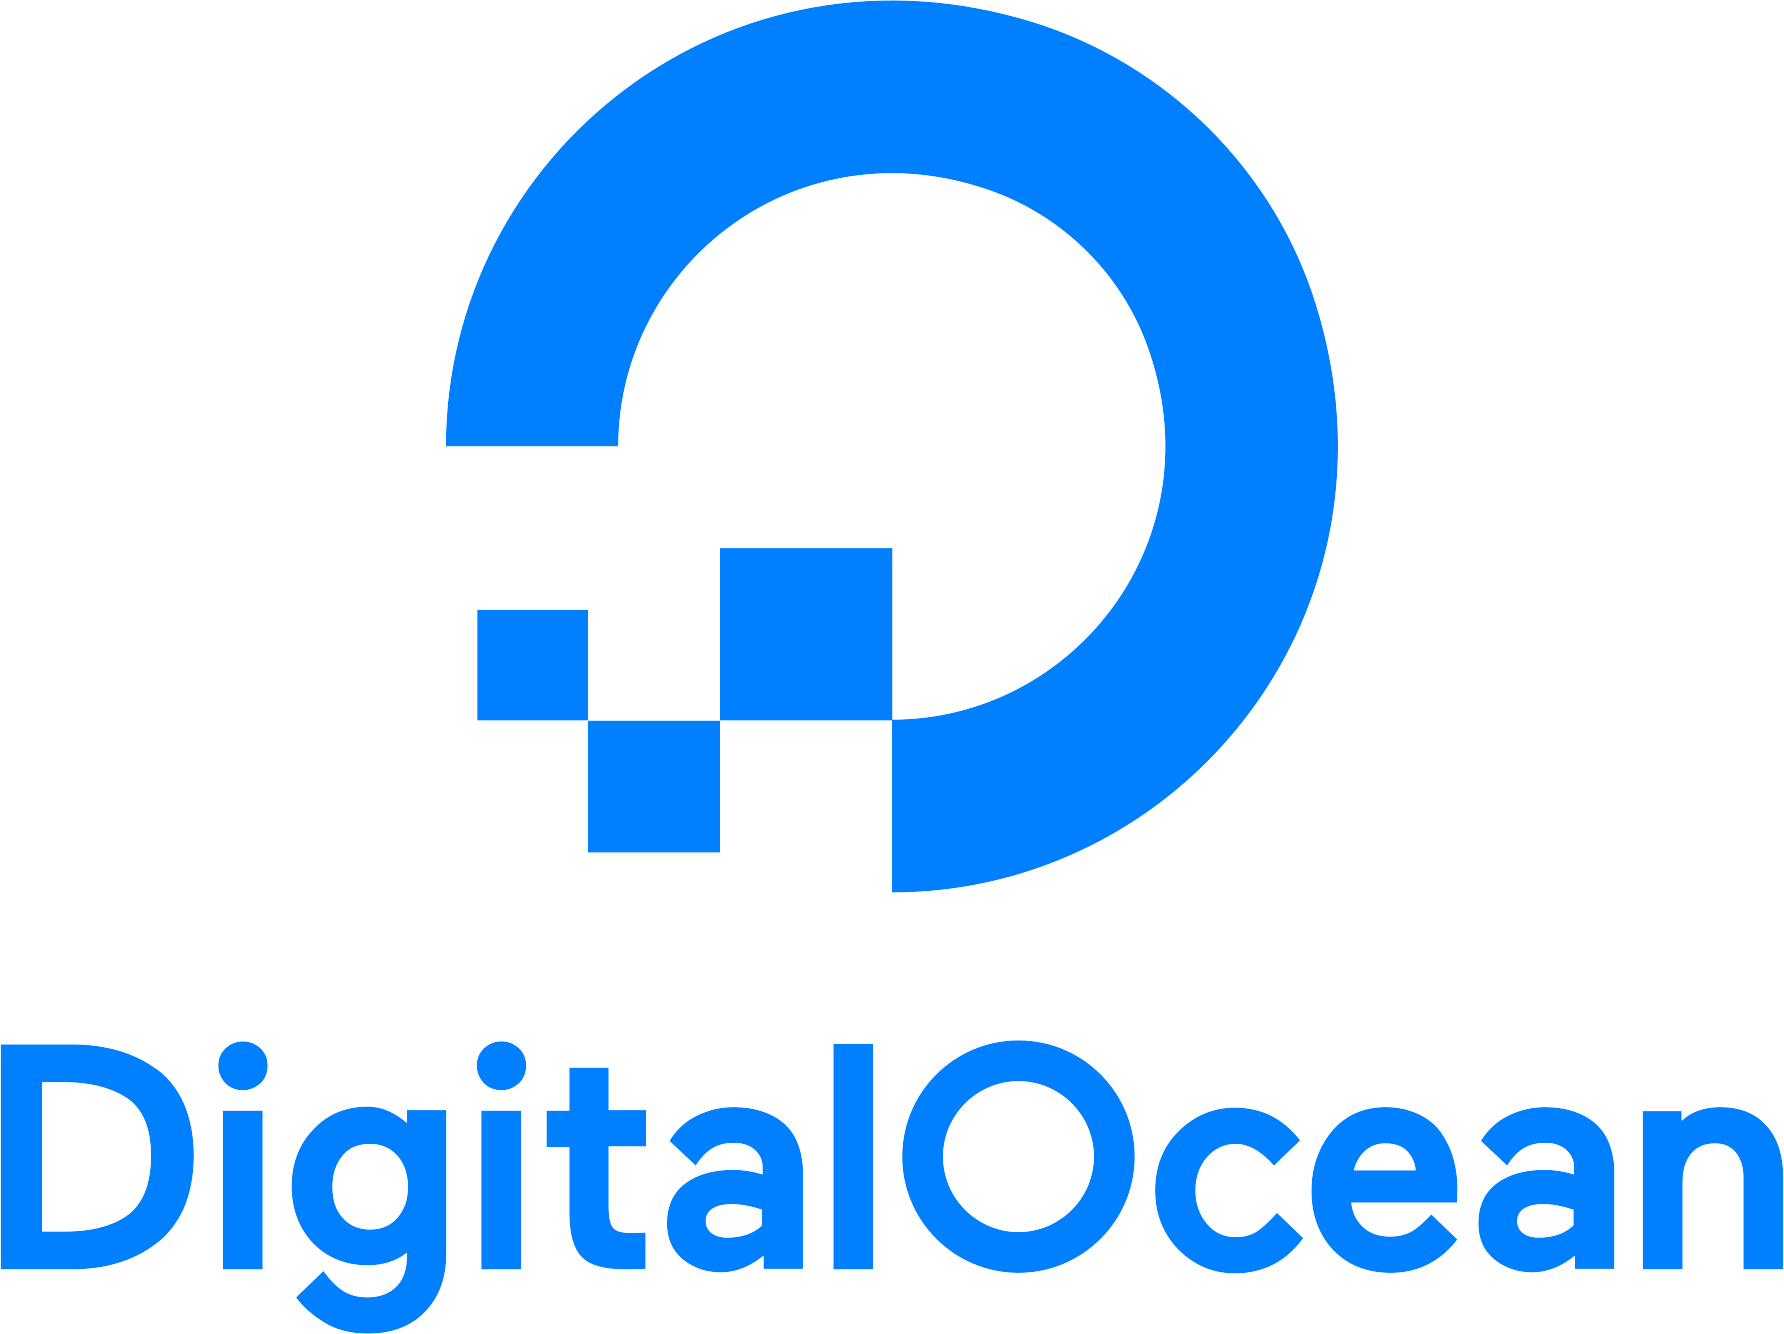 dig-ocean